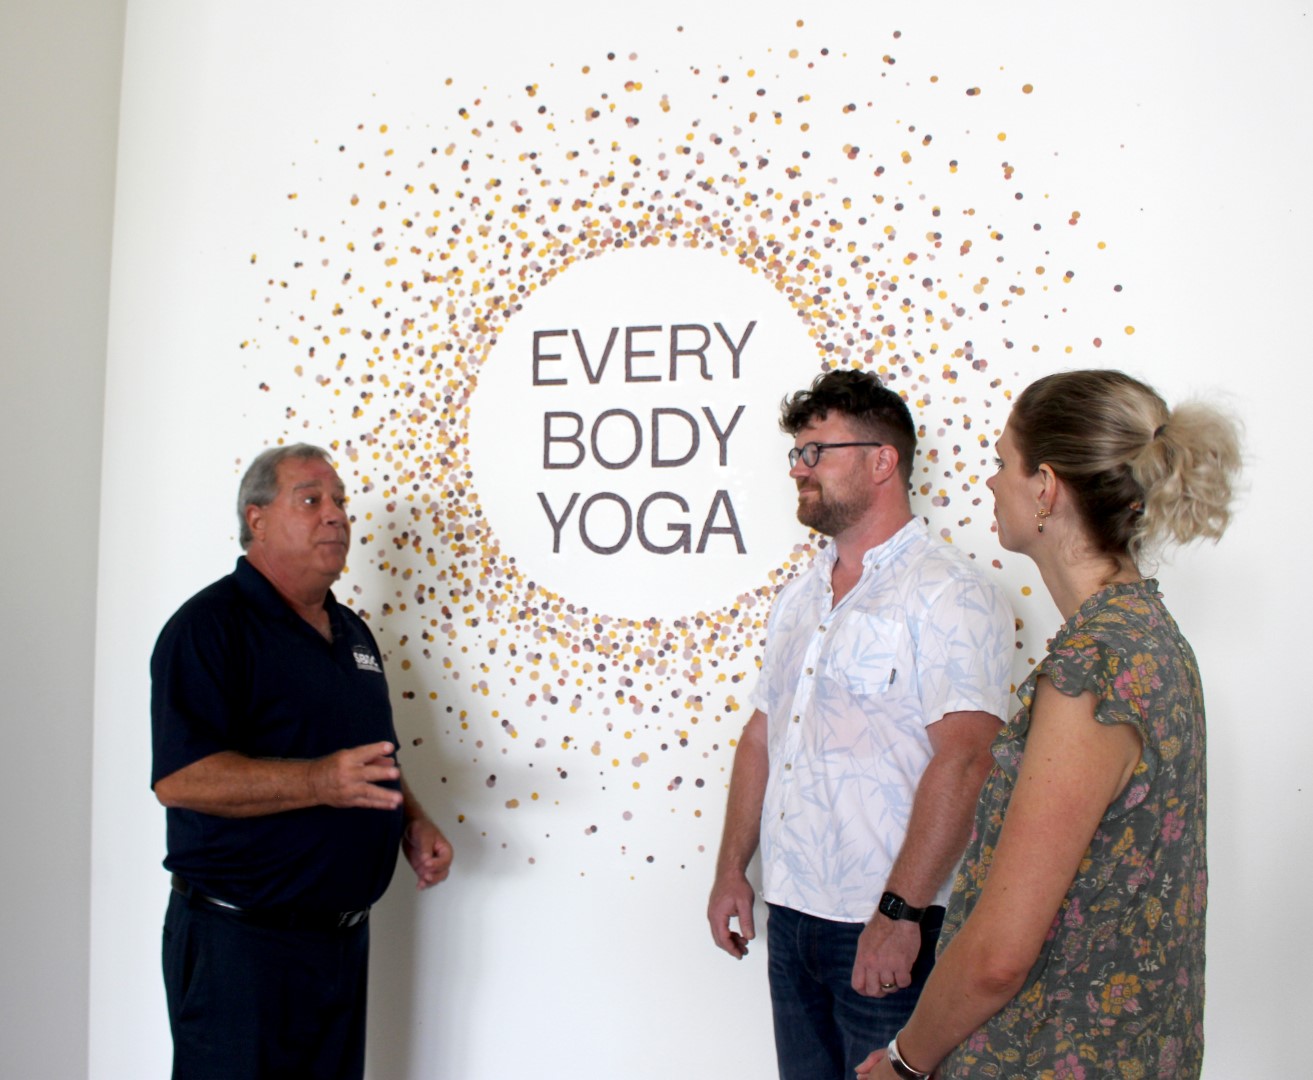 Duo Opens Yoga Studio for “Every Body” in Bradenton